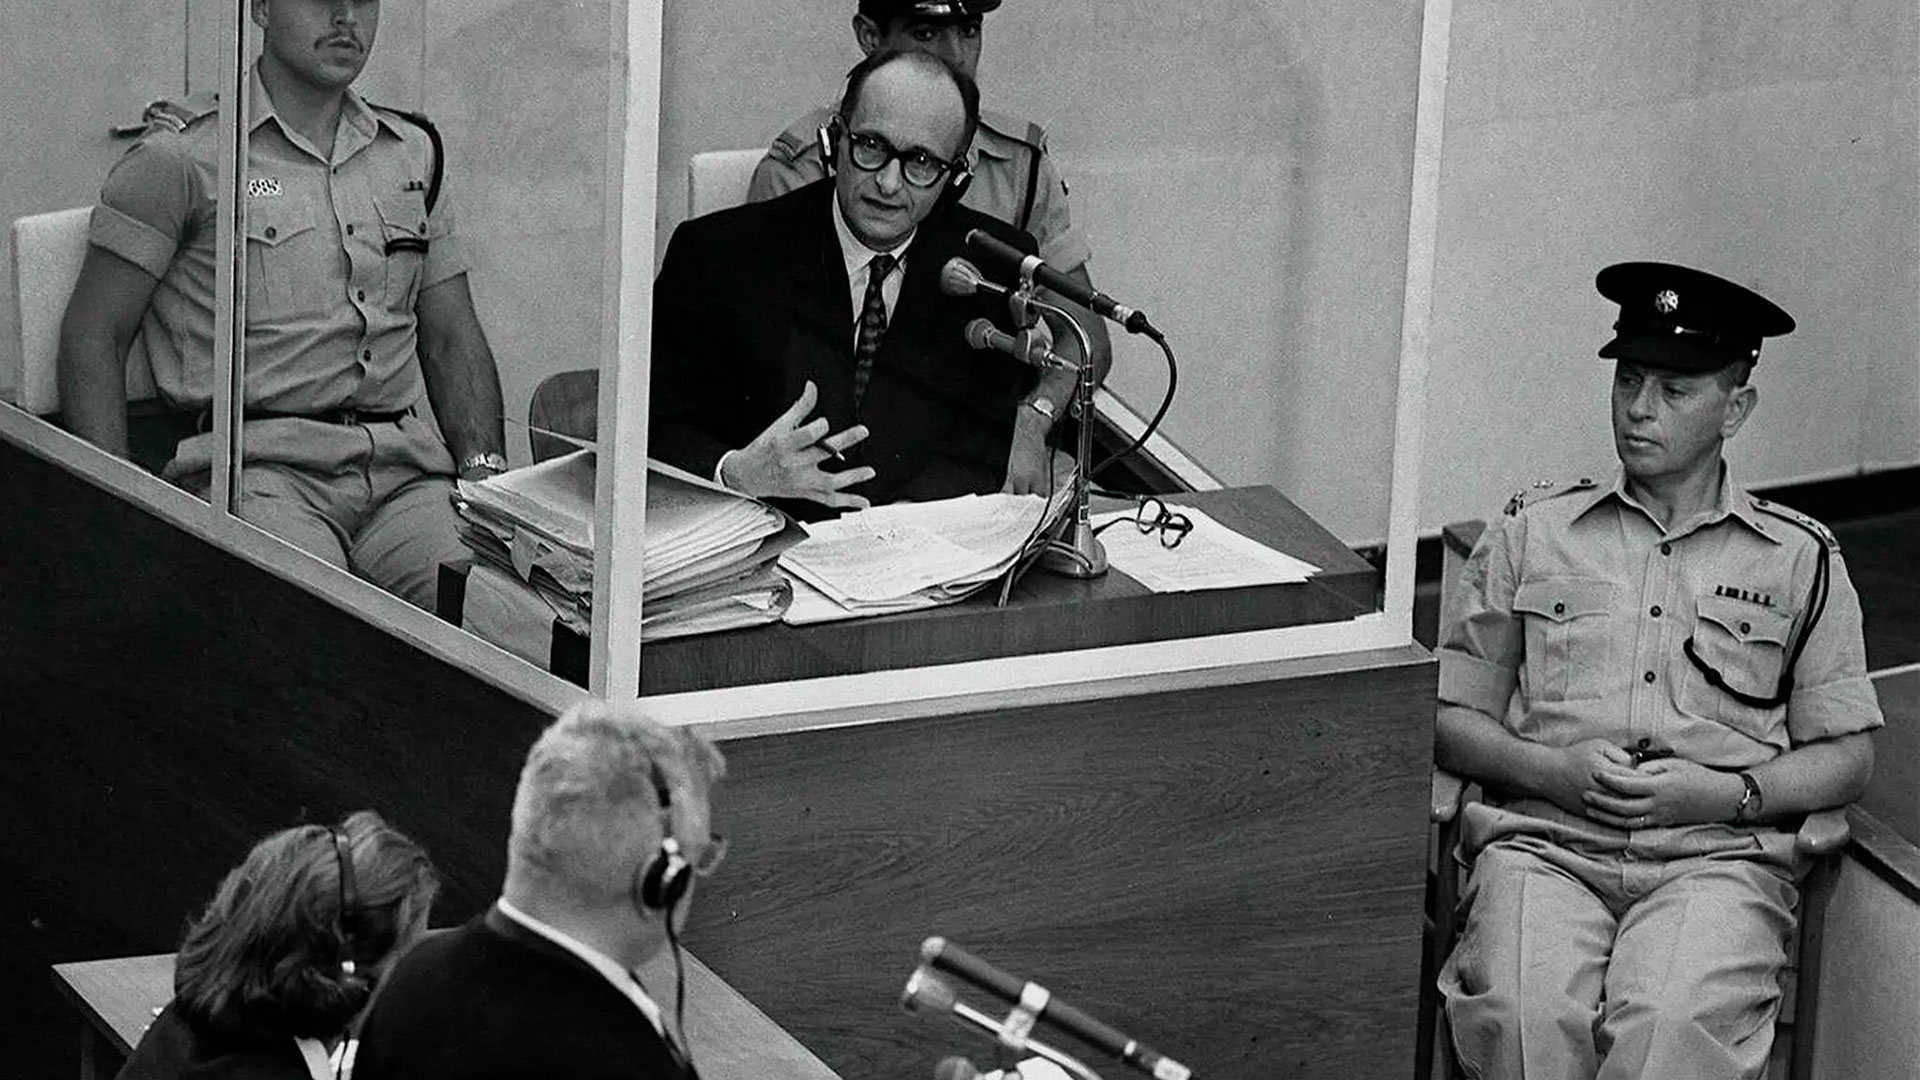 Eichmann en el tribunal donde fue juzgado. Insistió en que solo "cumplía órdenes" y negó toda responsabilidad sobre los atroces crímenes (GPO vía Getty Images)